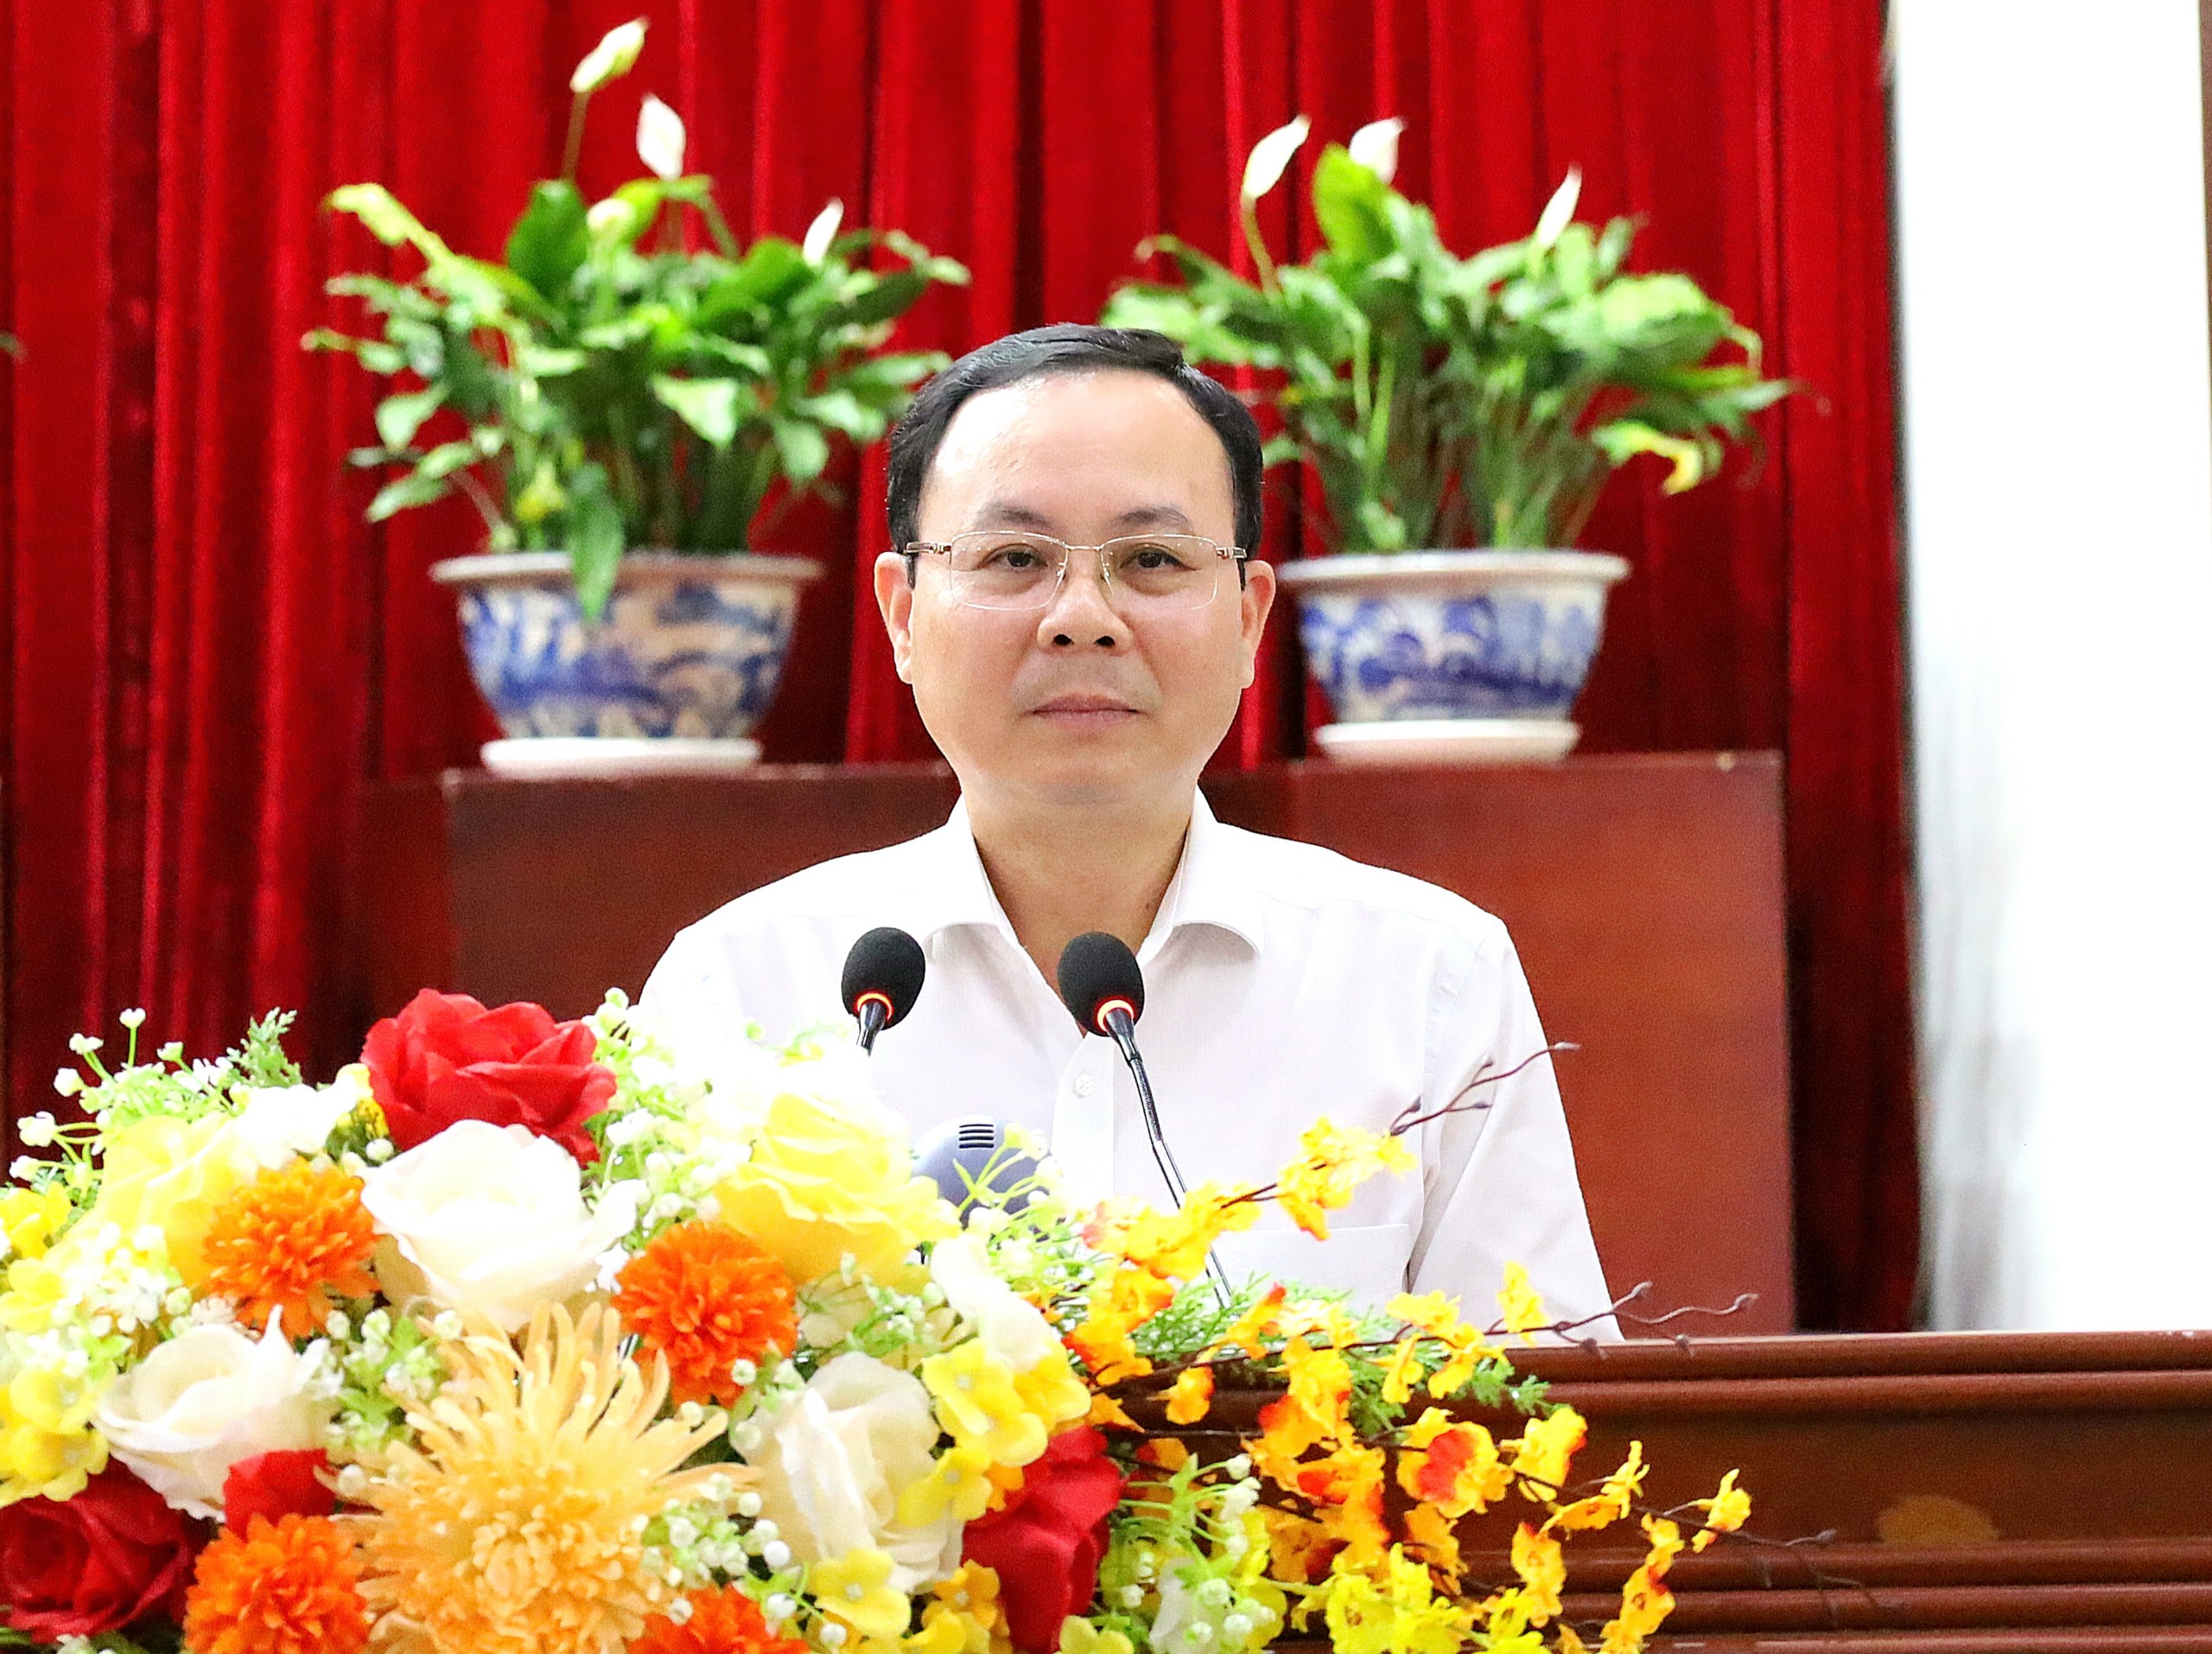 Ông Nguyễn Văn Hiếu - Ủy viên dự khuyết BCH Trung ương Đảng, Bí thư Thành ủy Cần Thơ phát biểu tại buổi họp mặt.